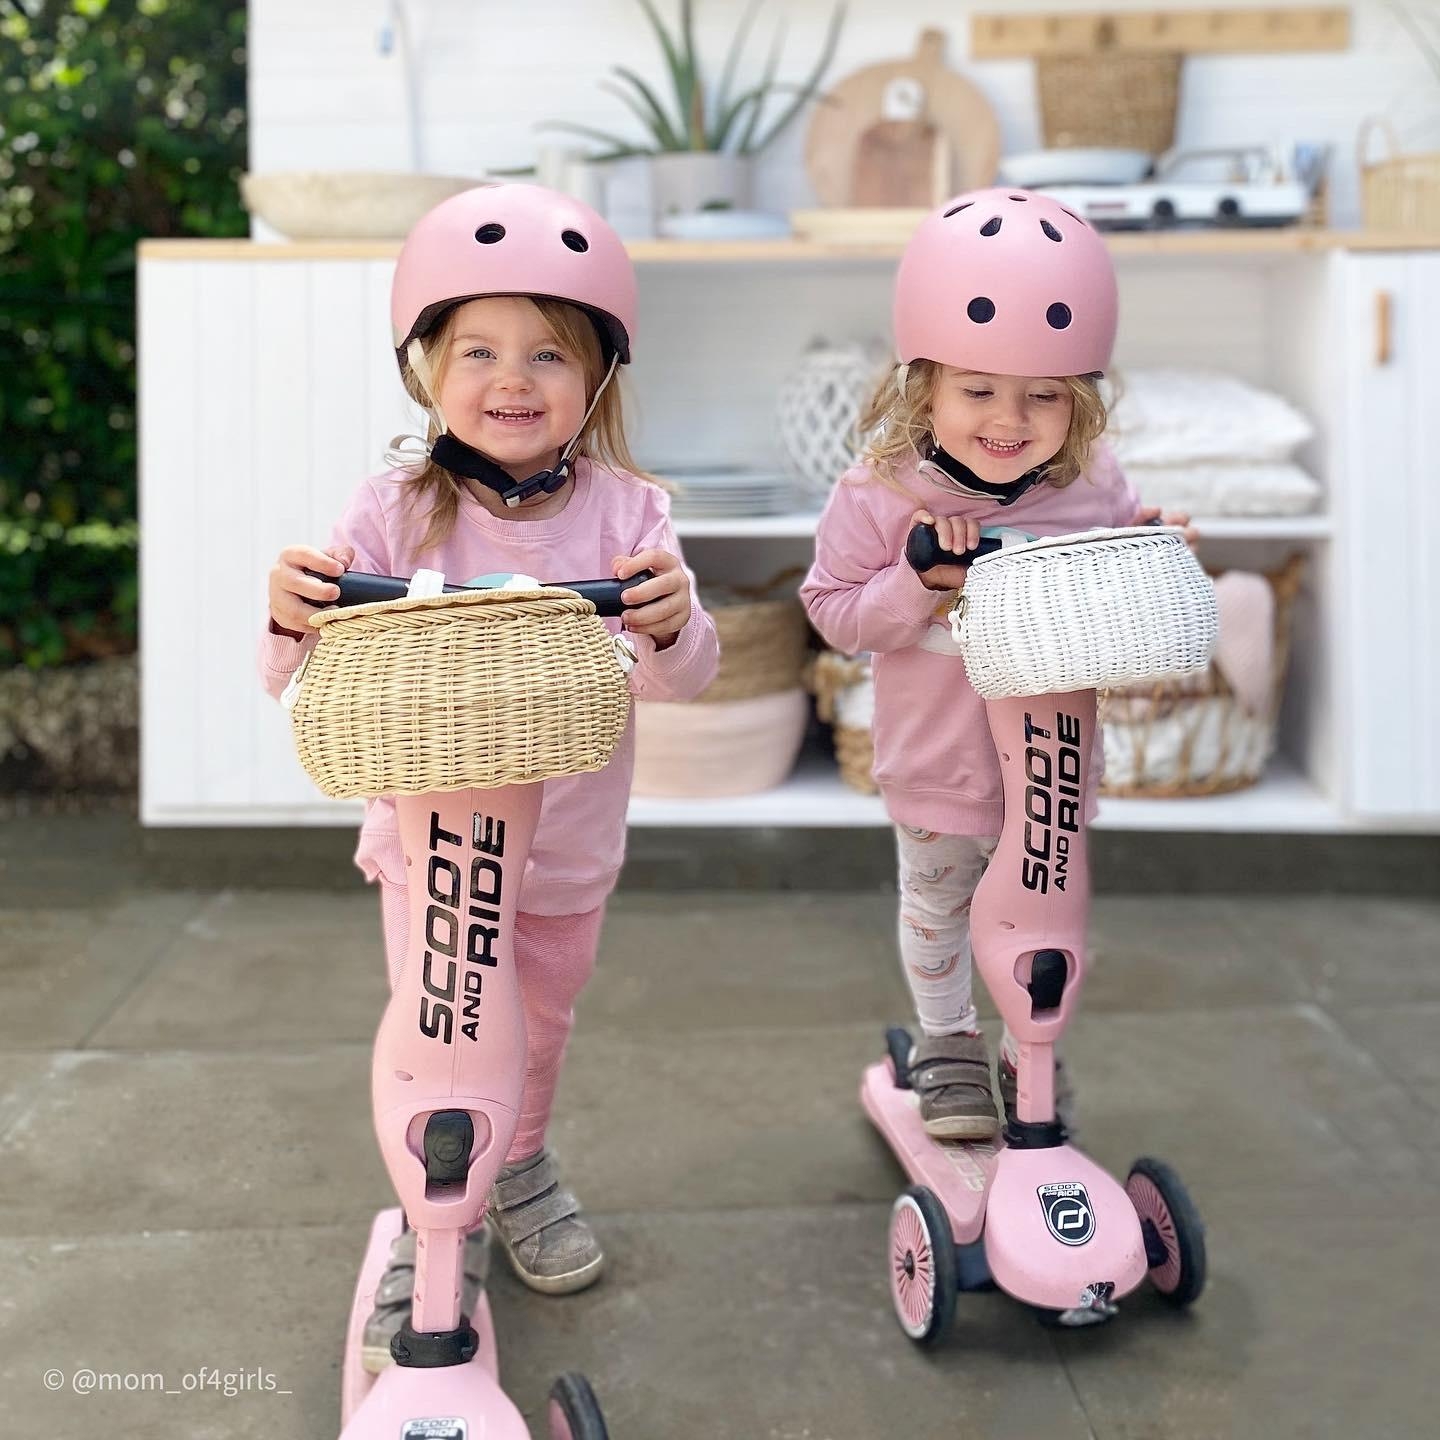 Lieblingsfahrzeuge der #zwillinge sind ganz klar ihre #roller 
#kleinkinder #whitegarden #gartenglück 